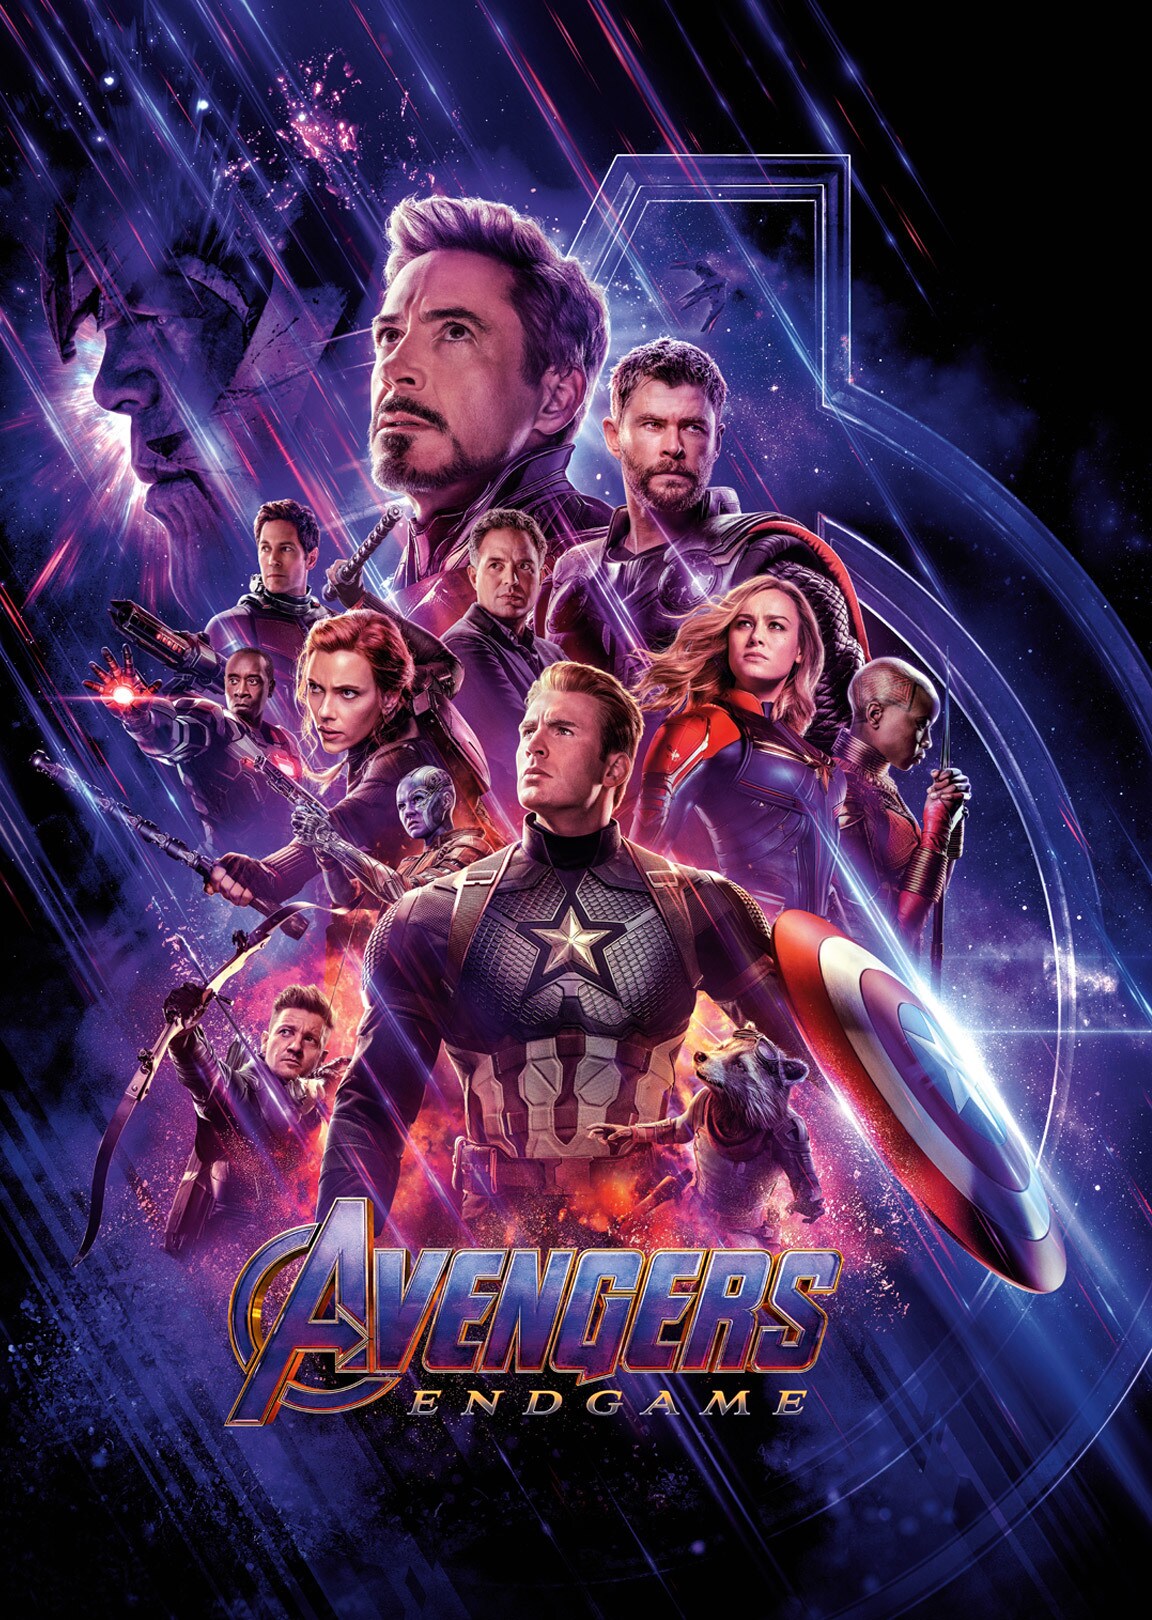 Avengers: Endgame | Now streaming on Disney+